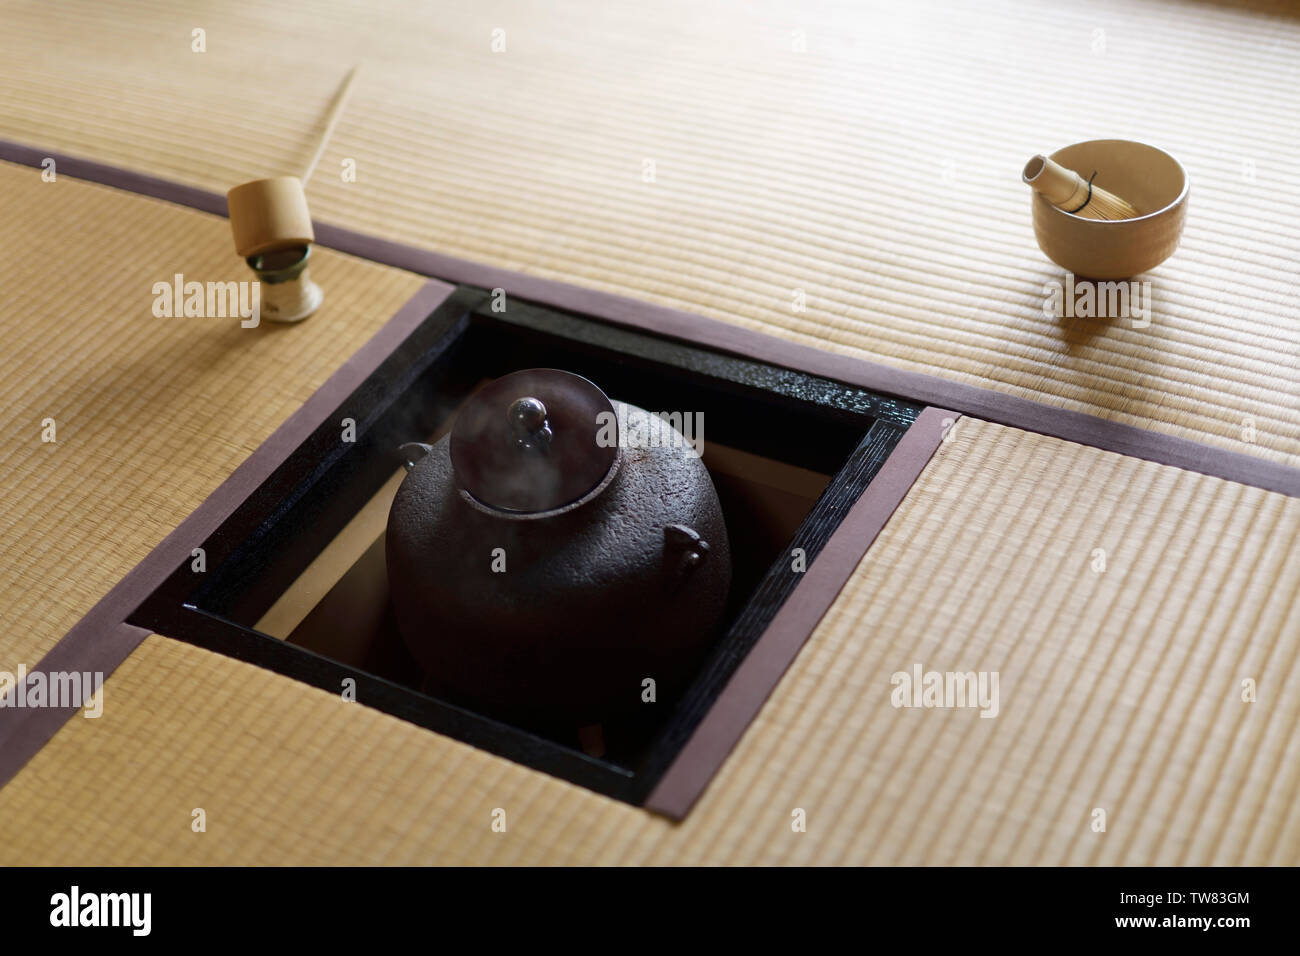 Licenza e stampe alle MaximImages.com:00 - Sala per la cerimonia del tè giapponese ancora vita di un bollitore in ghisa a vapore, Kama, in un pavimento aperto con tè Matcha Foto Stock